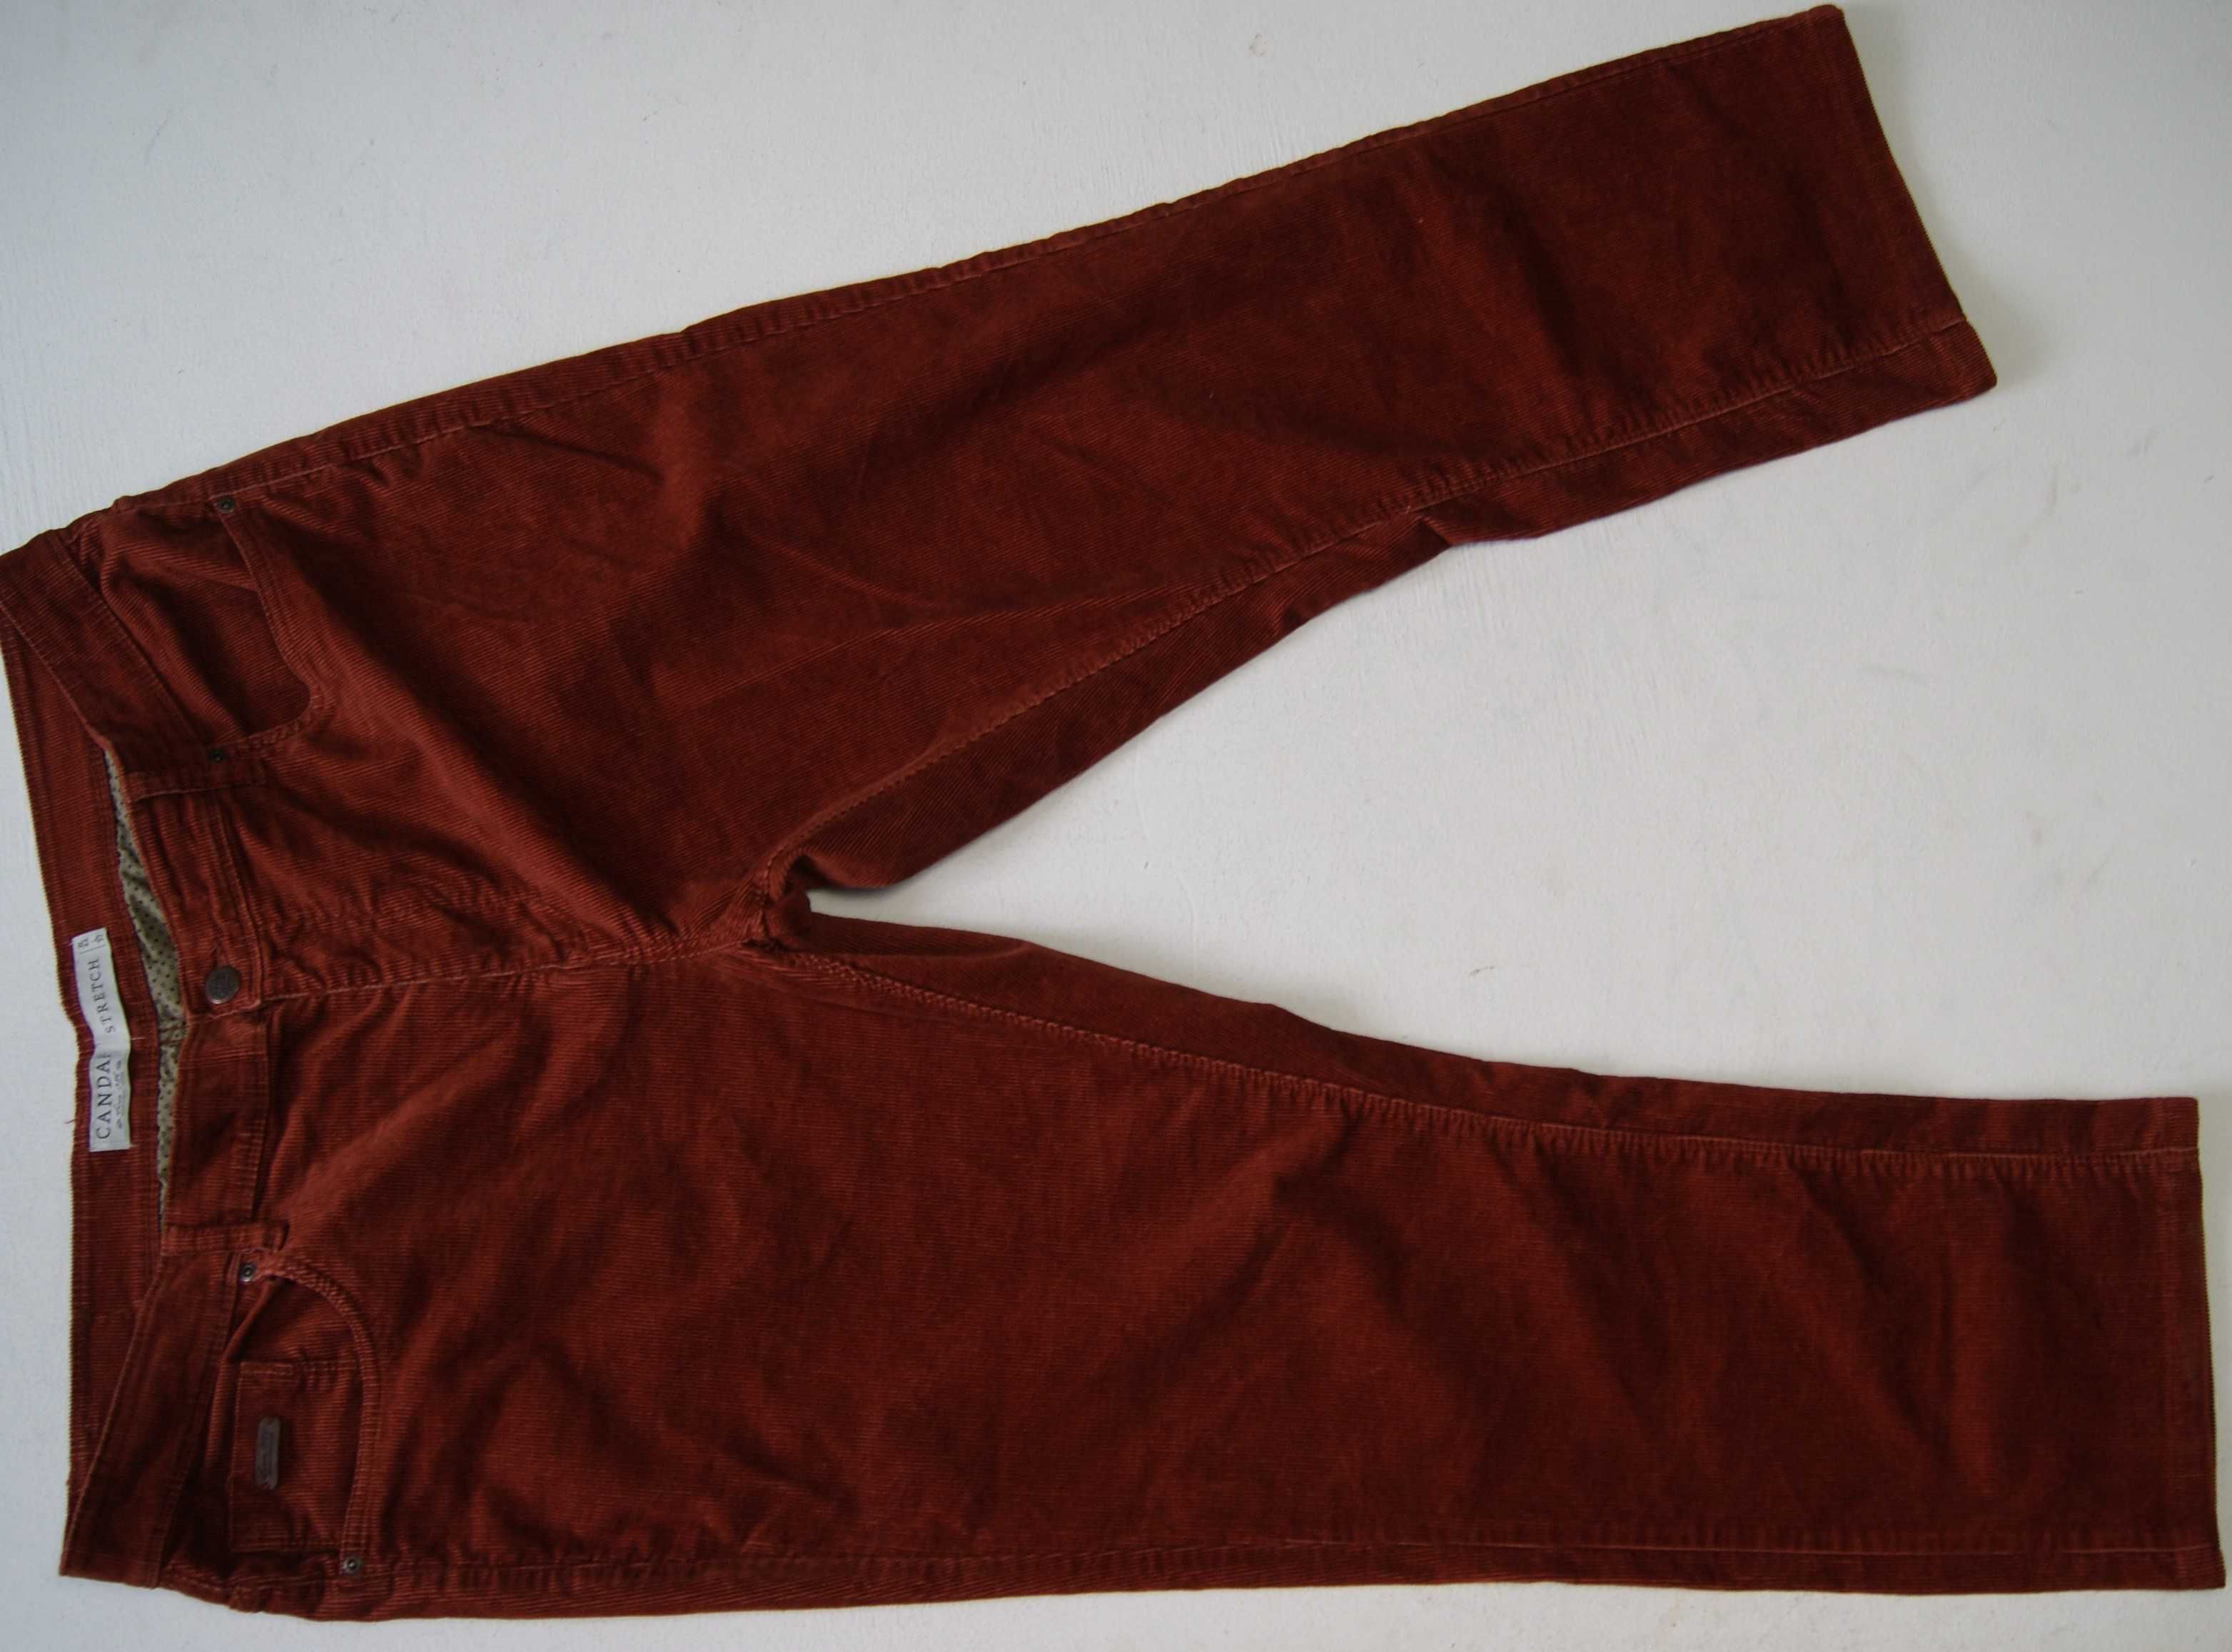 CANDA STRETCH W44 L32 PAS 112 spodnie męskie sztruks stretch jak nowe